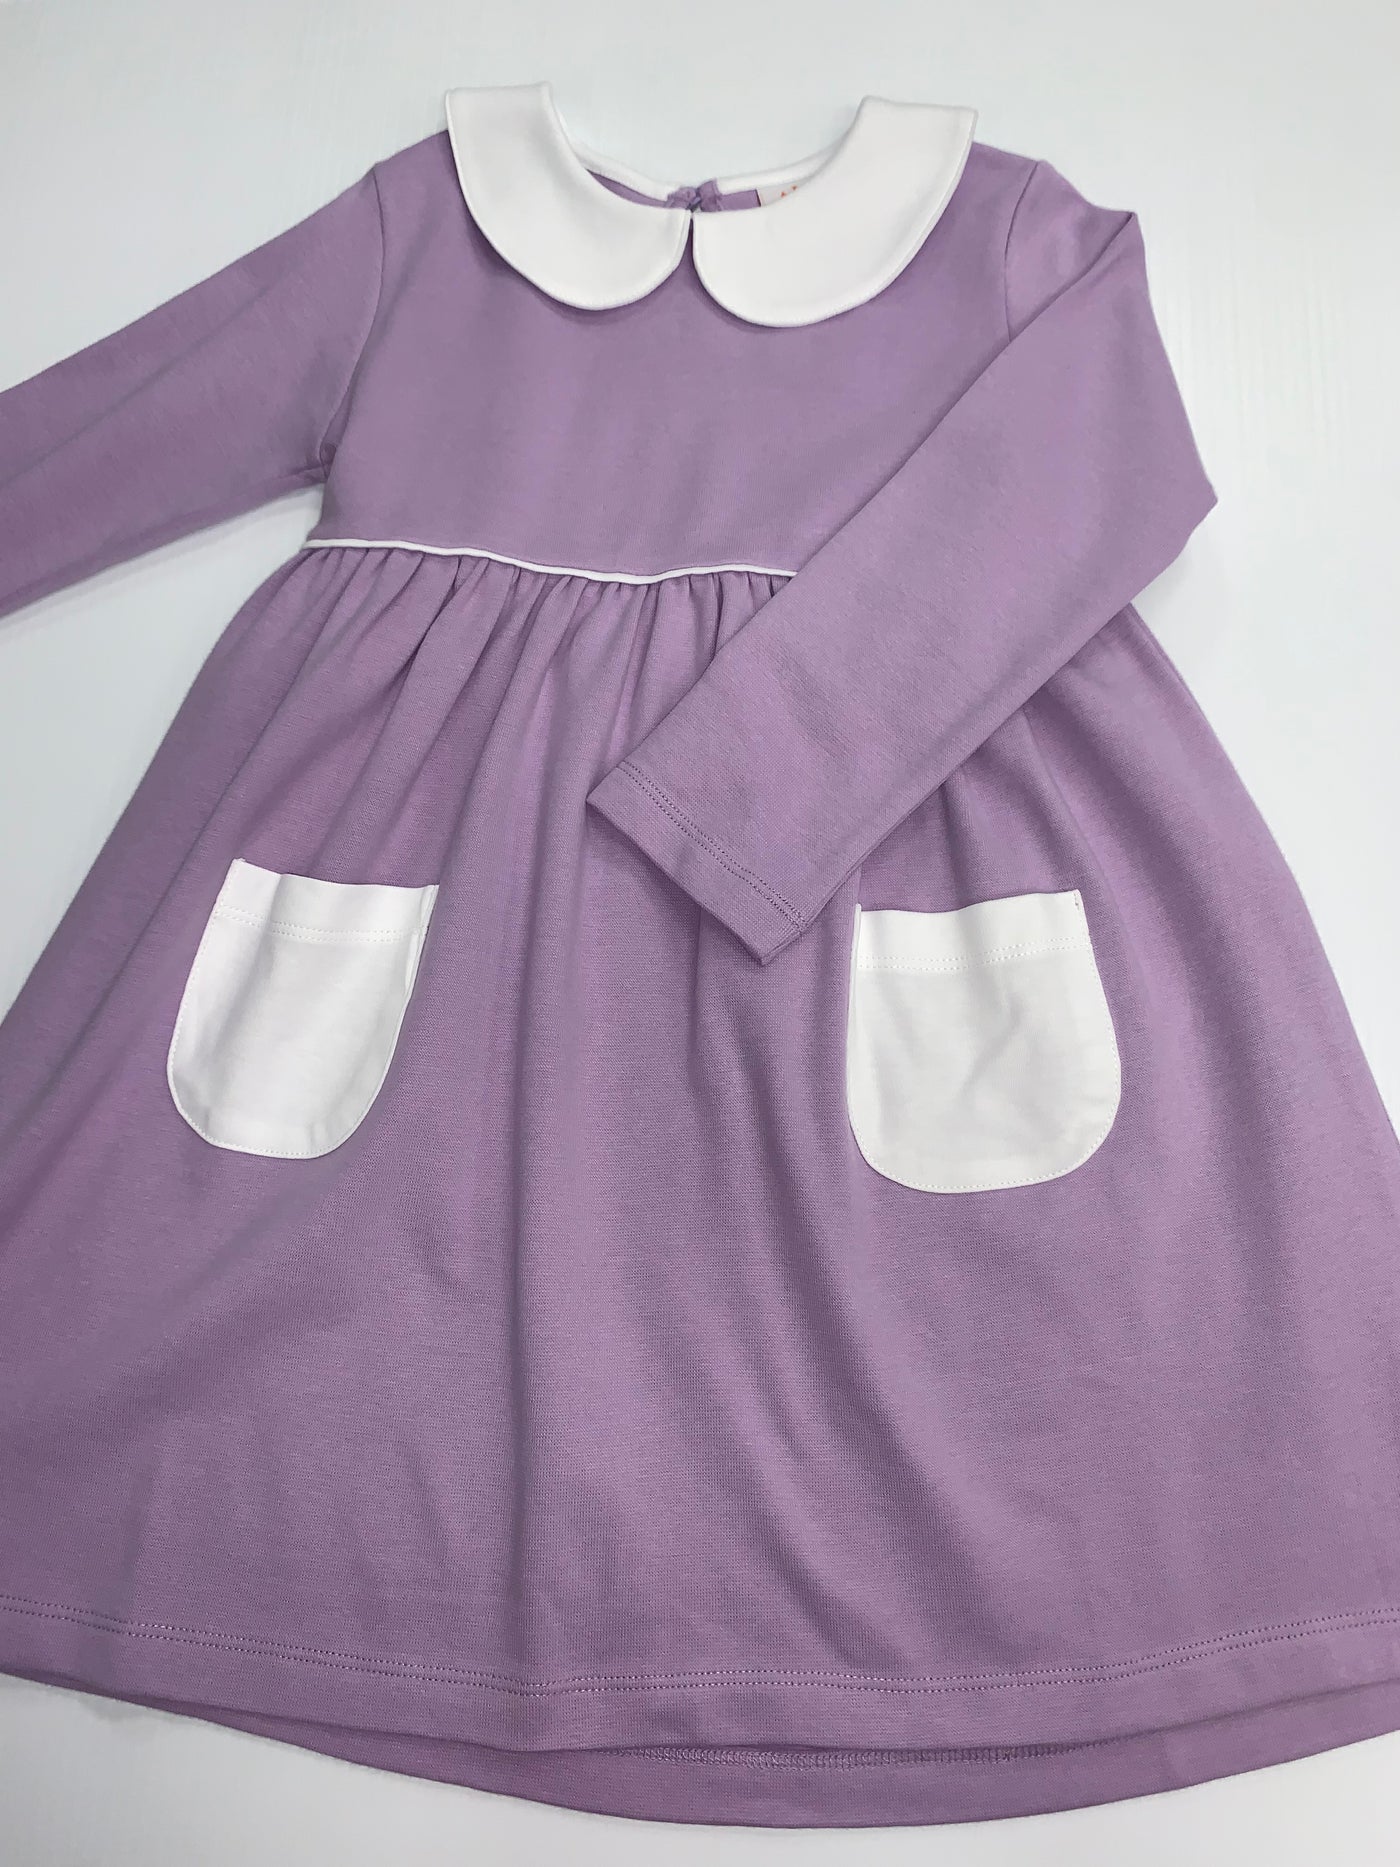 Long Sleeve Purple Dress w/Pockets